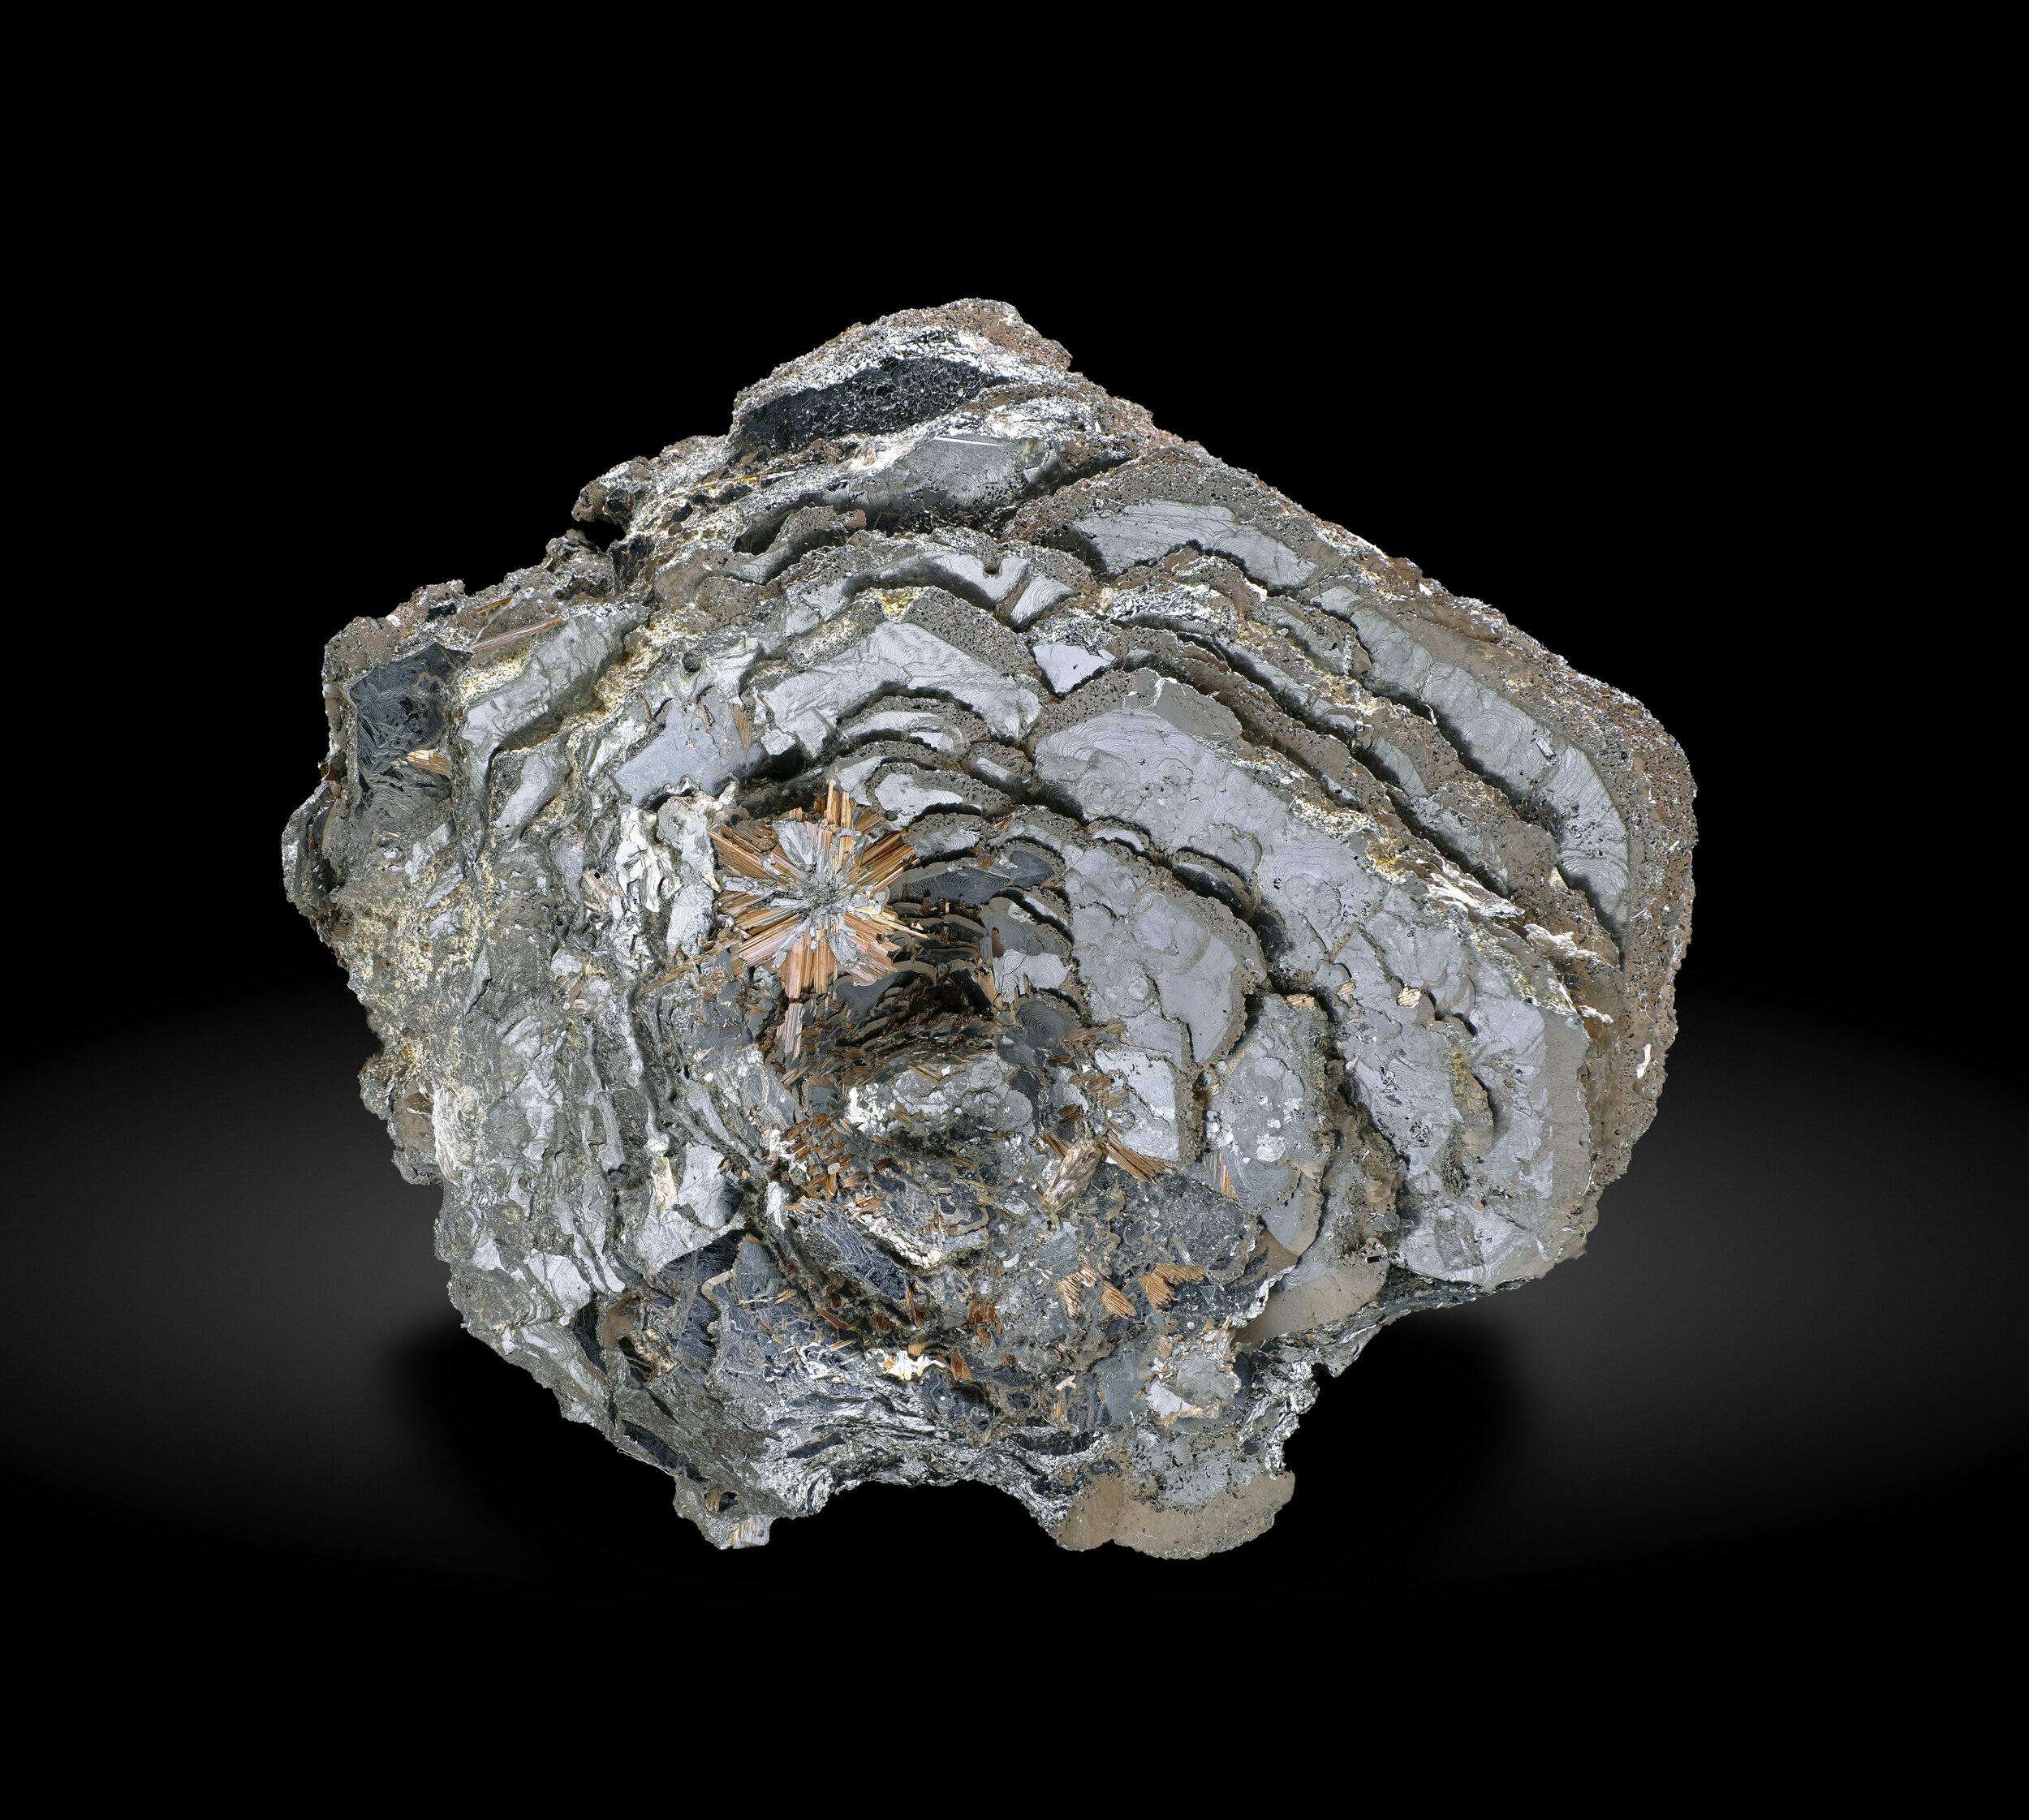 specimens/s_imagesAO2/Hematite-MFM56AO2_6668_f.jpg